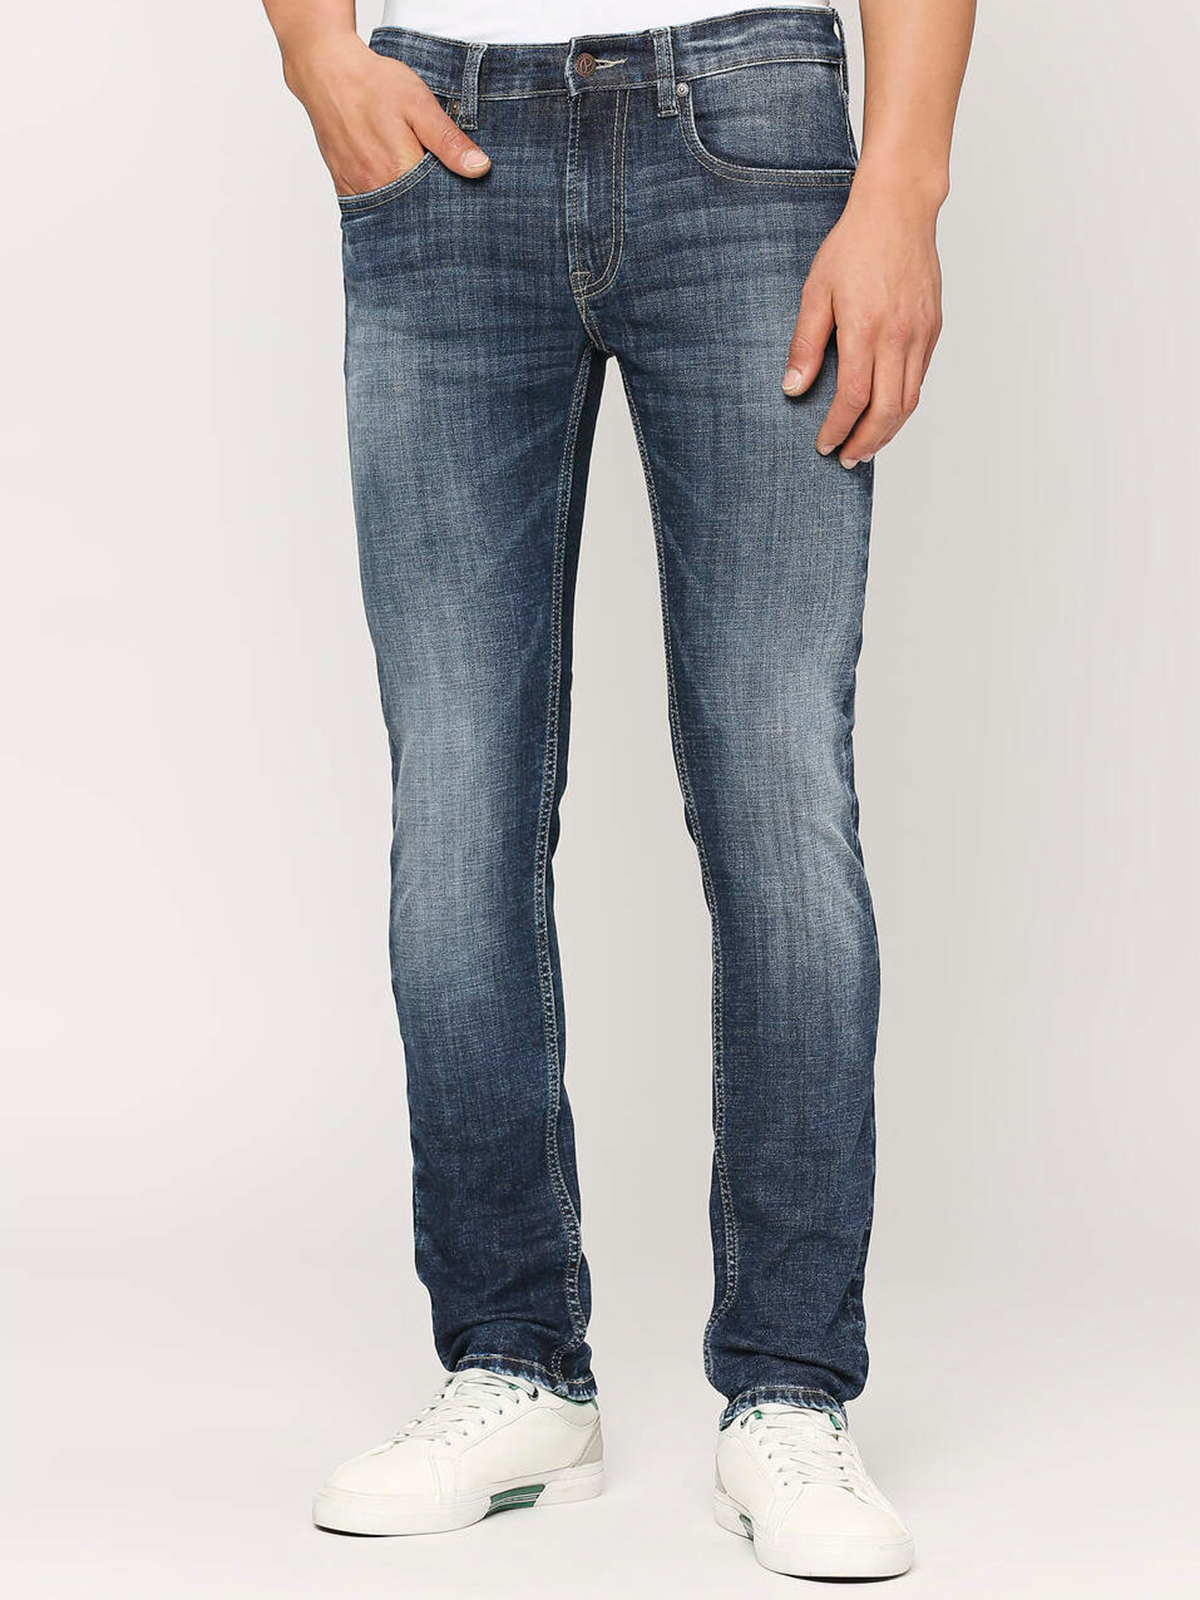 Buy Men Blue Light Wash Slim Tapered Jeans Online - 672826 | Peter England